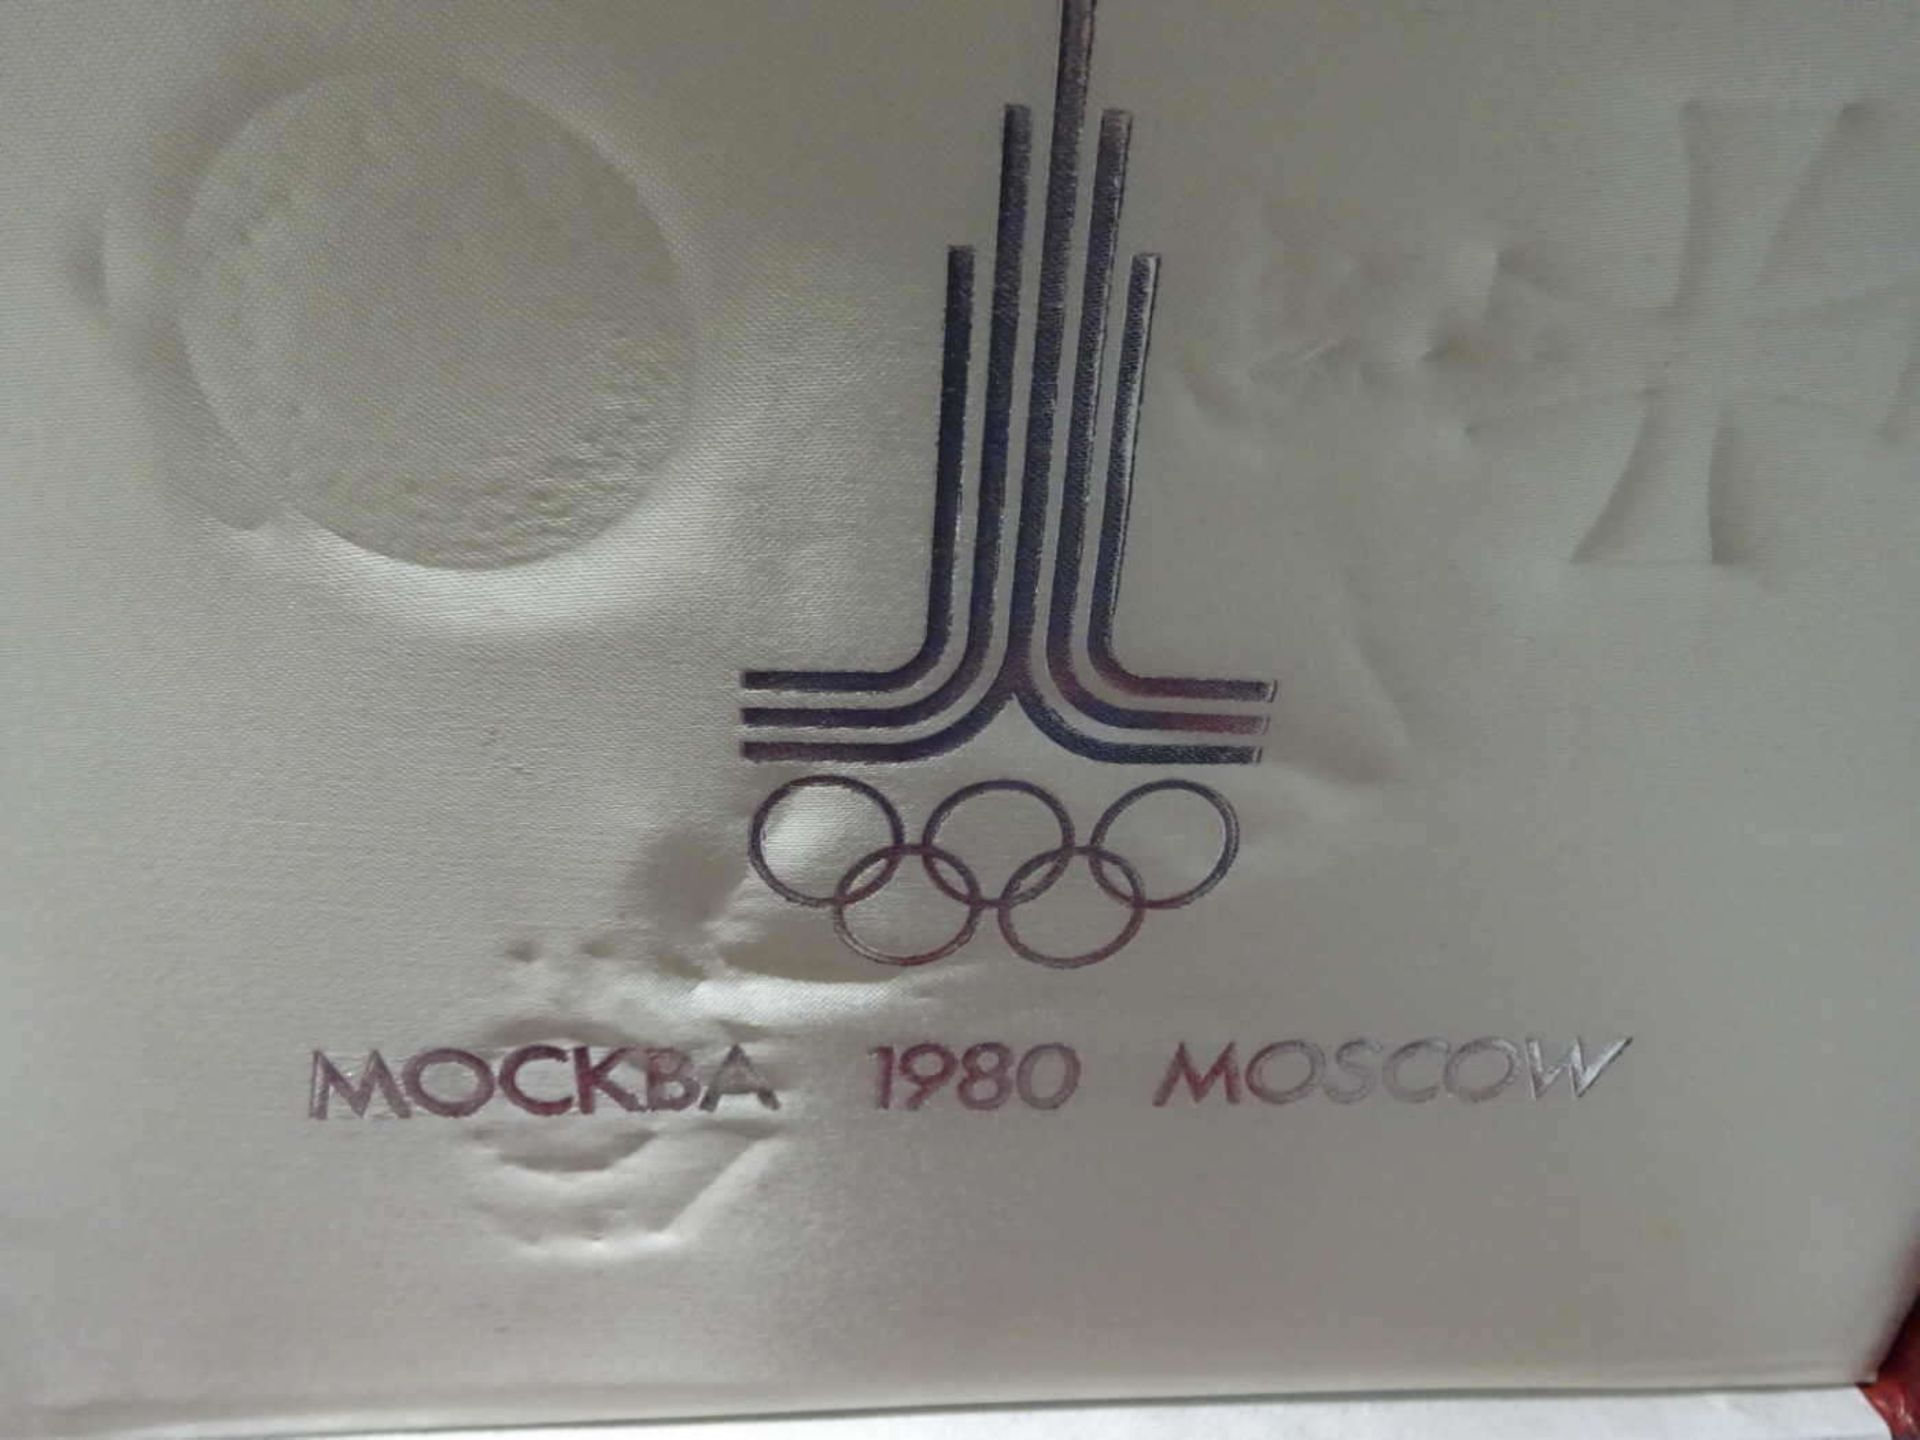 Komplette Münzsammlung, Olympia Moskau 1980, Silber, insg. 28 Münzen, in Original - Bild 3 aus 3